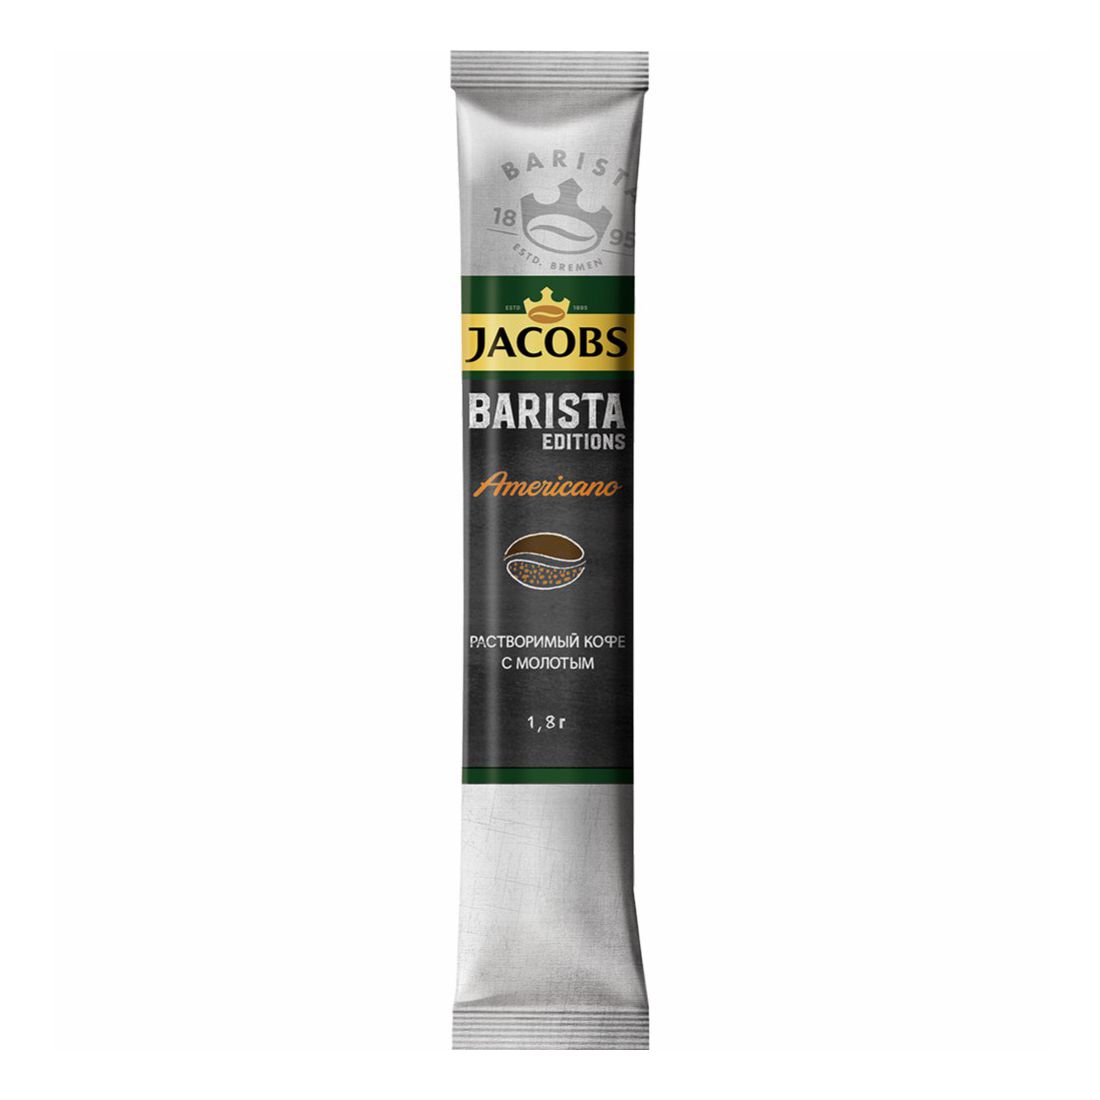 Кофе Jacobs Barista Editions Americano арабика молотый в растворимом 1,8 гх 30шт 20 блоков